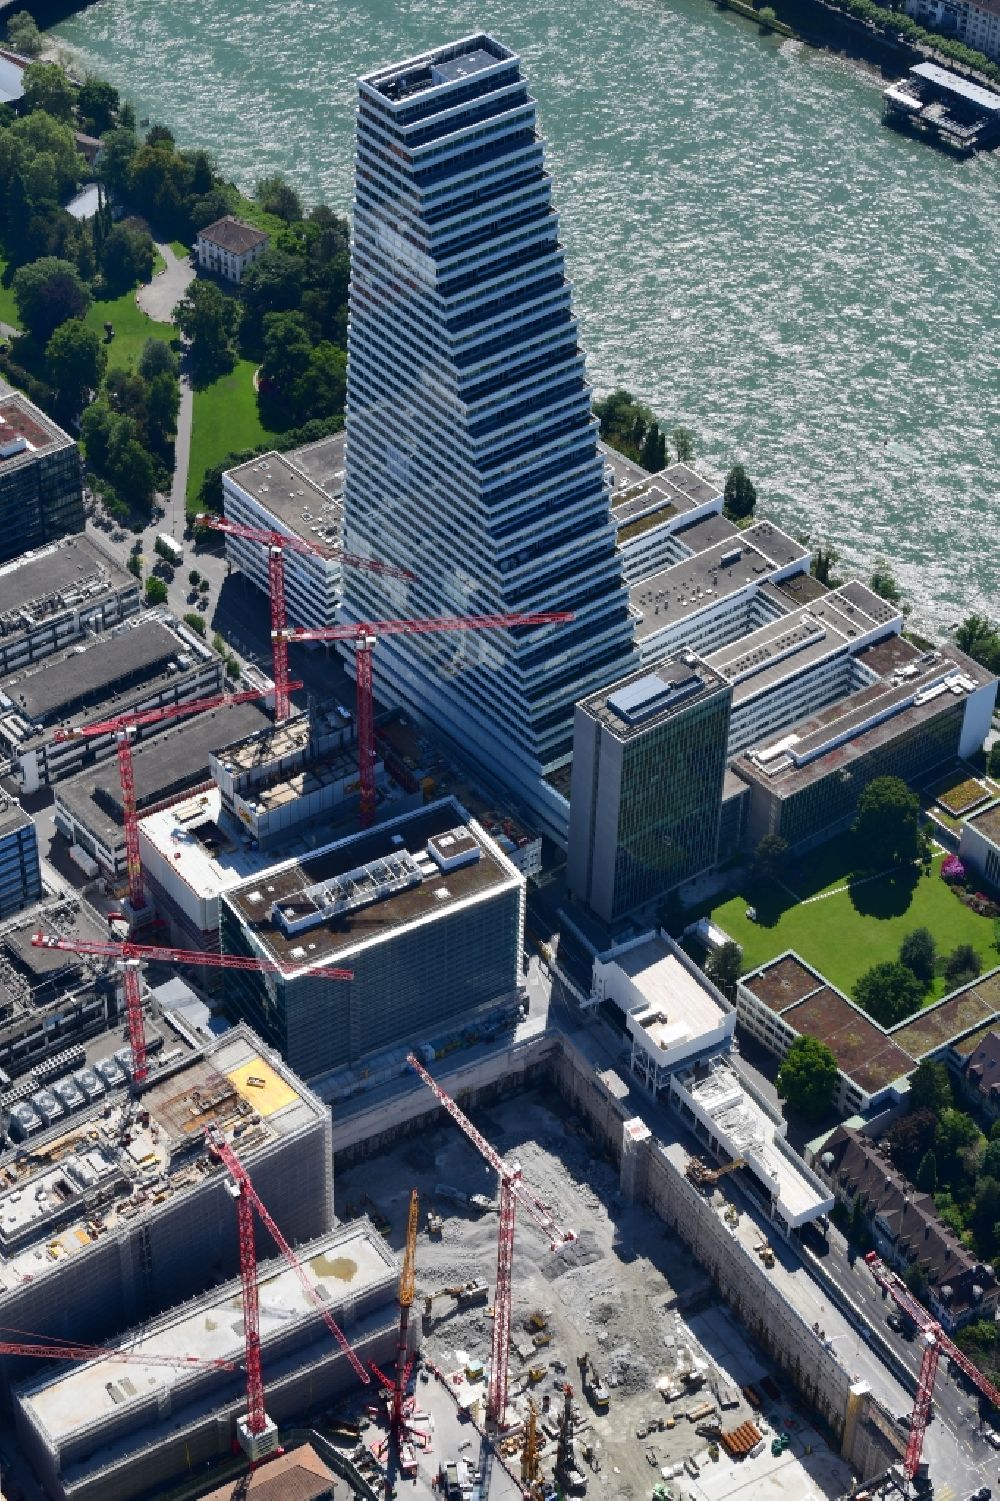 Basel aus der Vogelperspektive: Erweiterungs- Baustellen auf dem Areal und Betriebsgelände der Pharmafirma Roche mit dem Roche- Turm - Hochhaus in Basel in der Schweiz